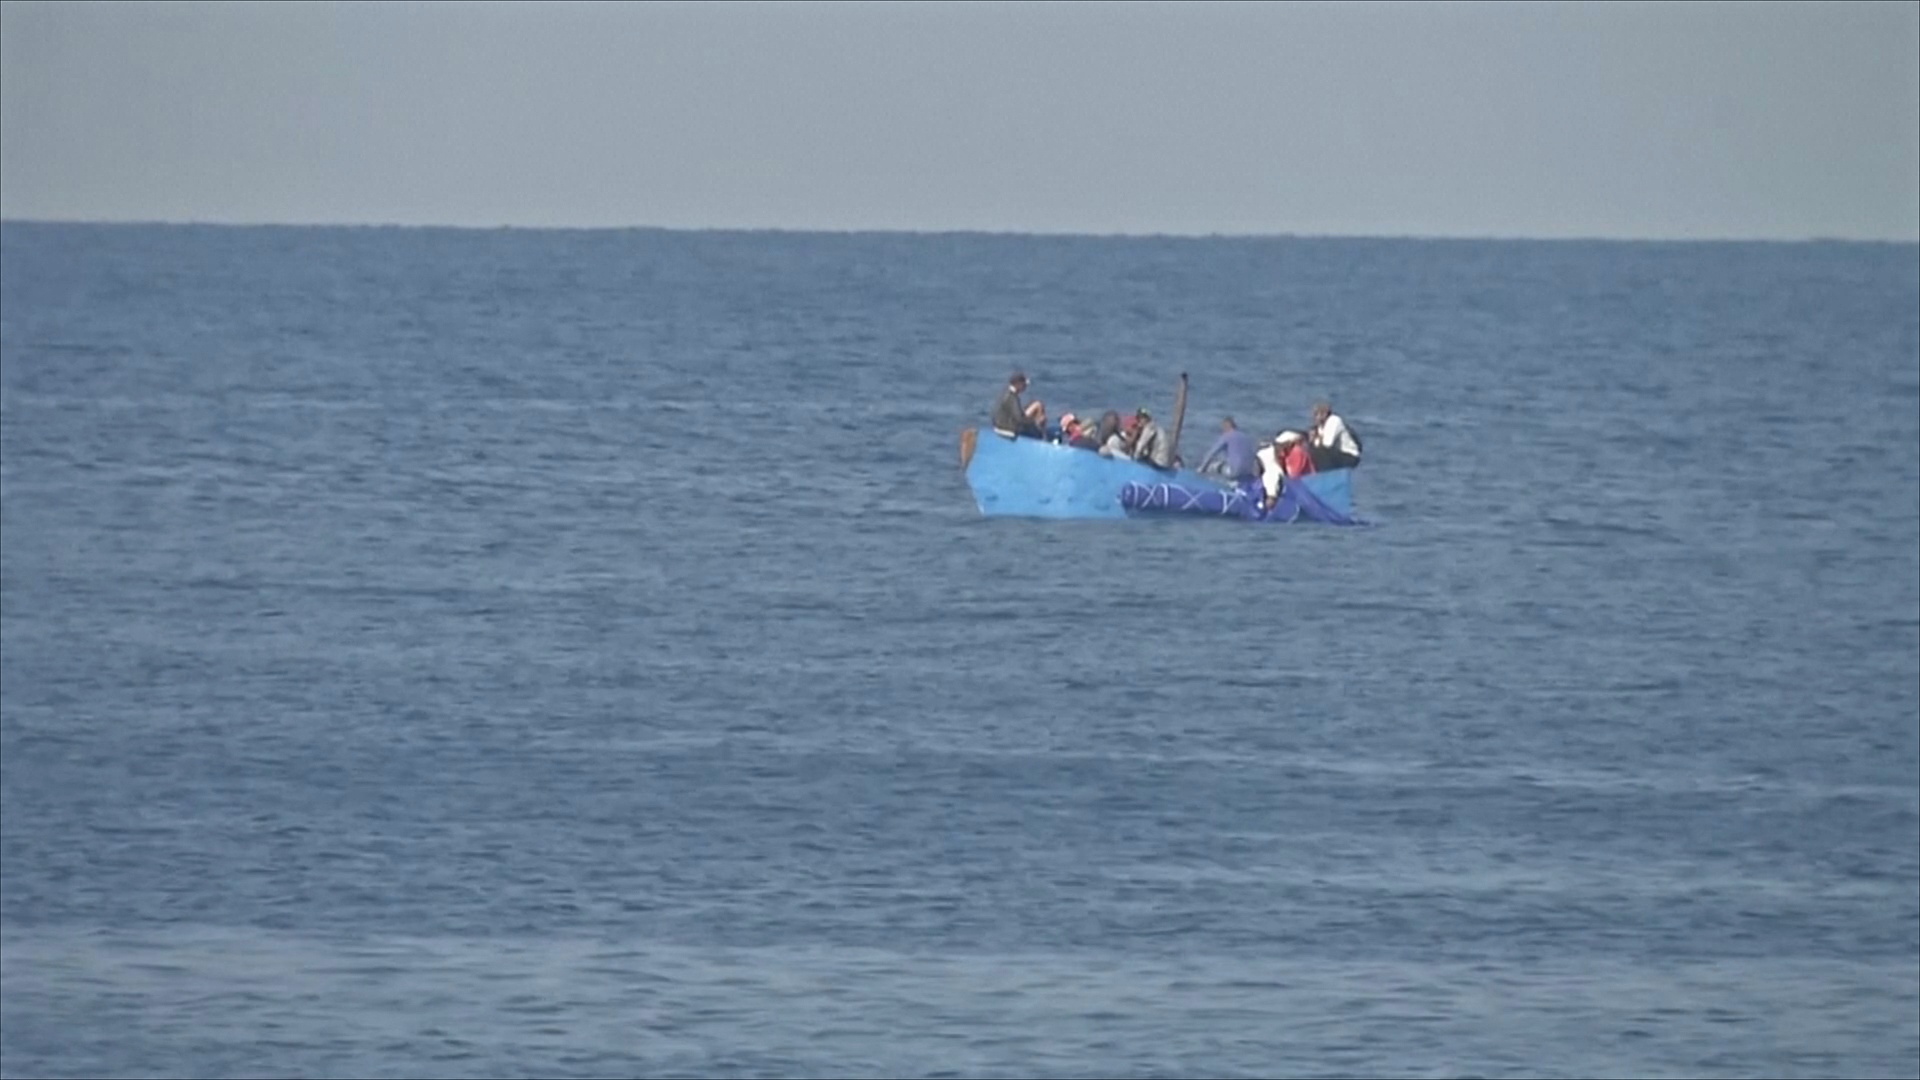 Спасались вплавь: как кубинцы пытались добраться до США на лодке